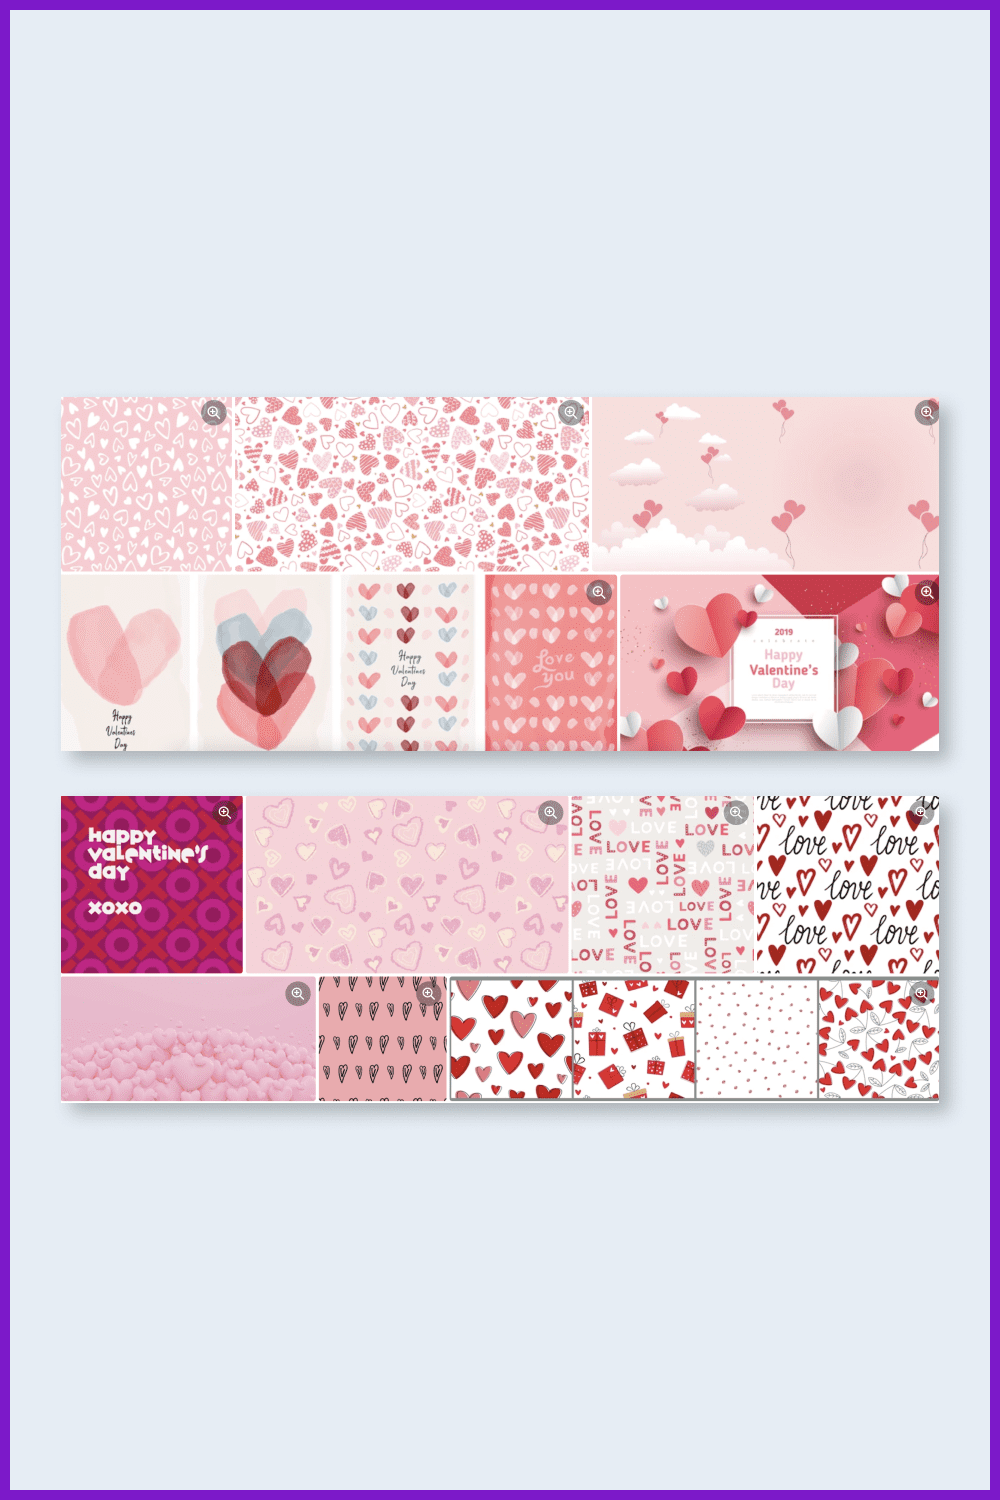 Shutterstock’s Valentine’s Day Patterns.